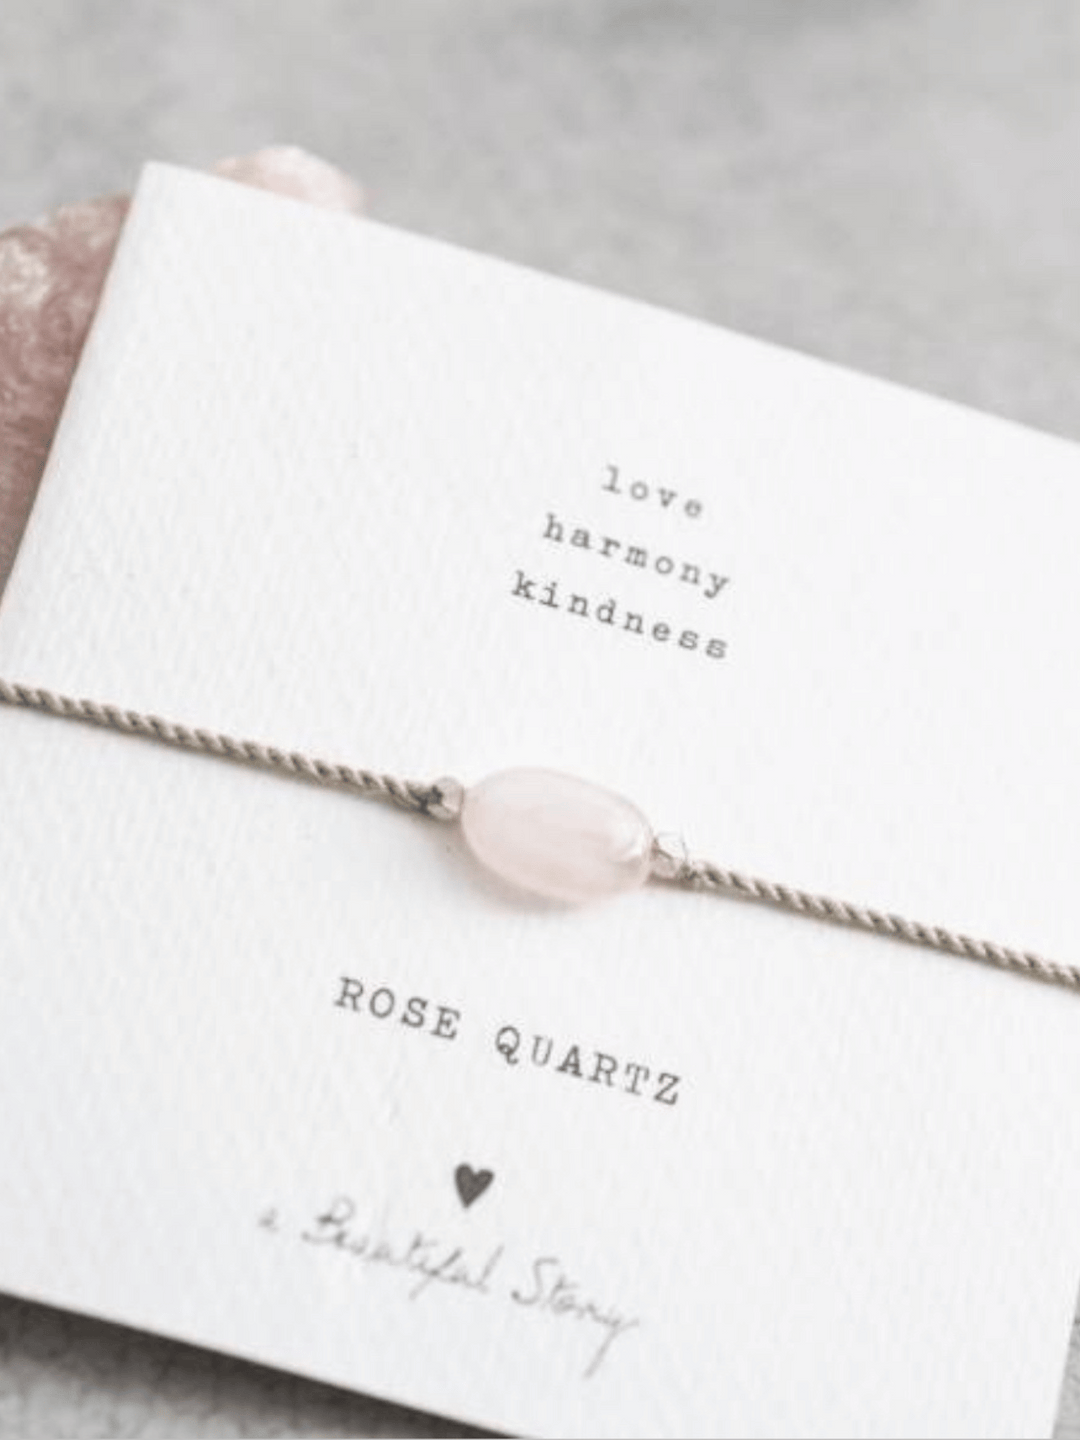 Gemstone cards rose quartz